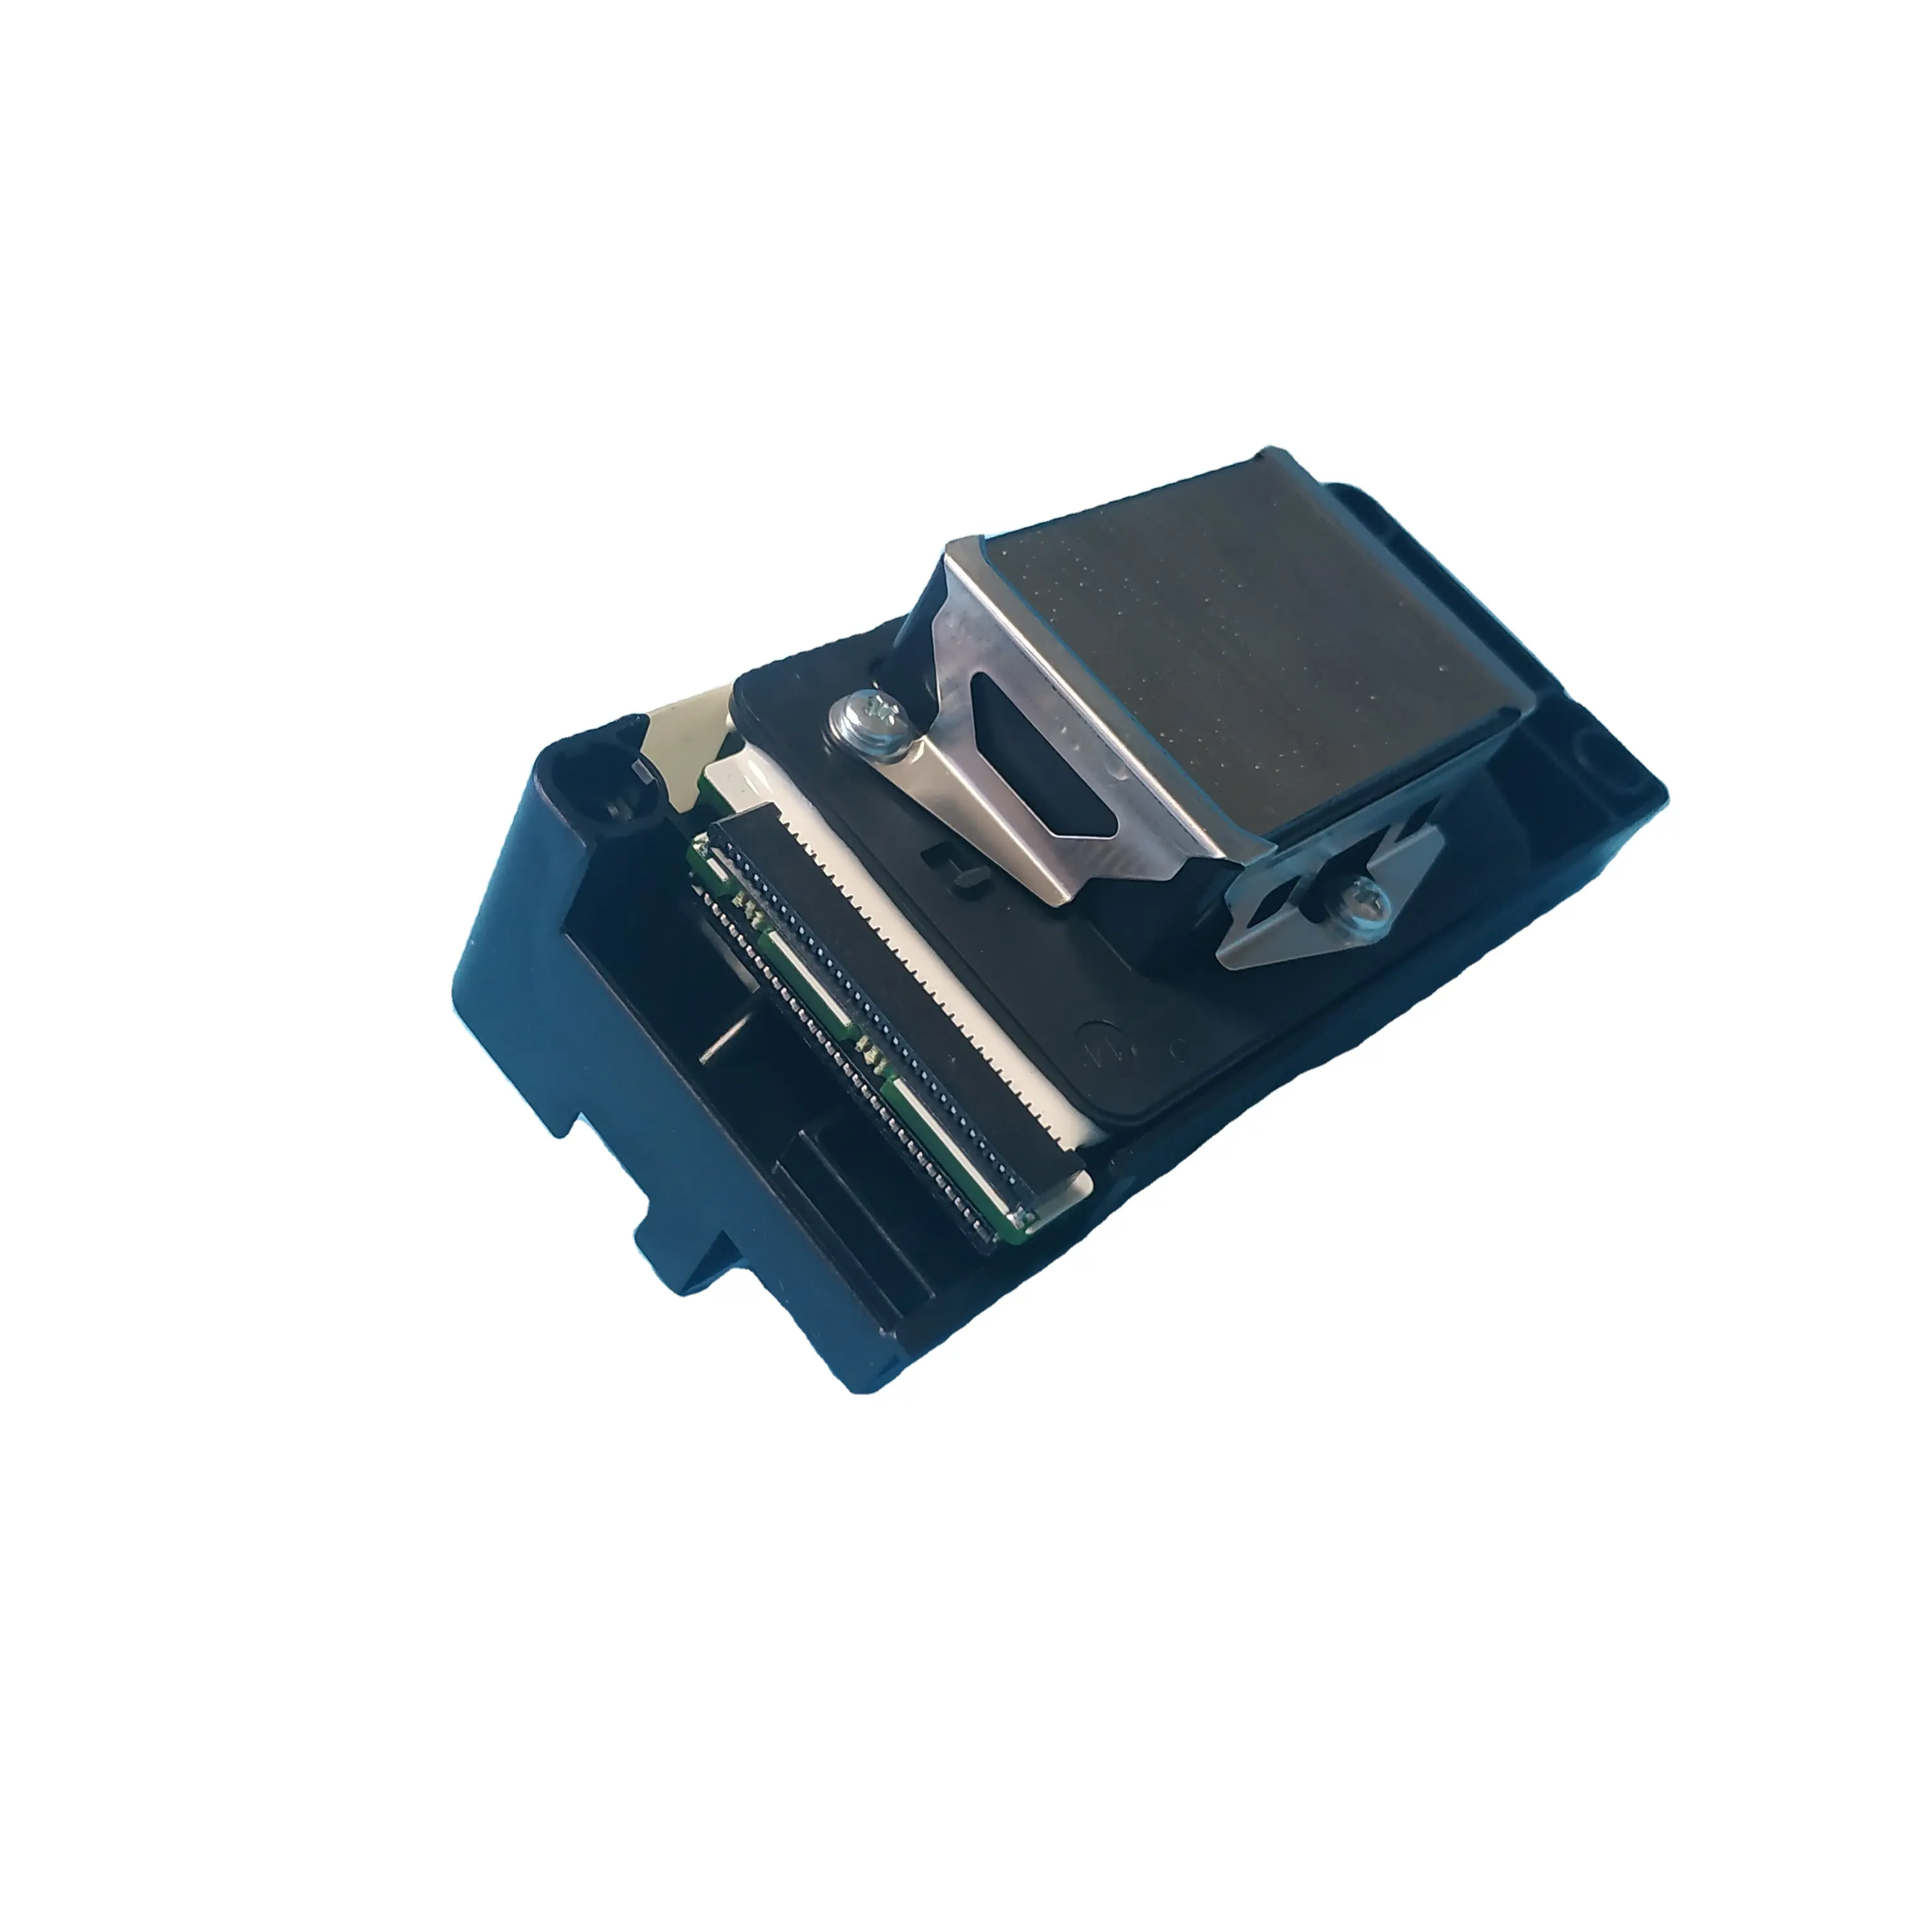 Testina di stampa DX5 per stampante Epson Stylus Pro 7800 9800/testina di stampa a base d'acqua F160010